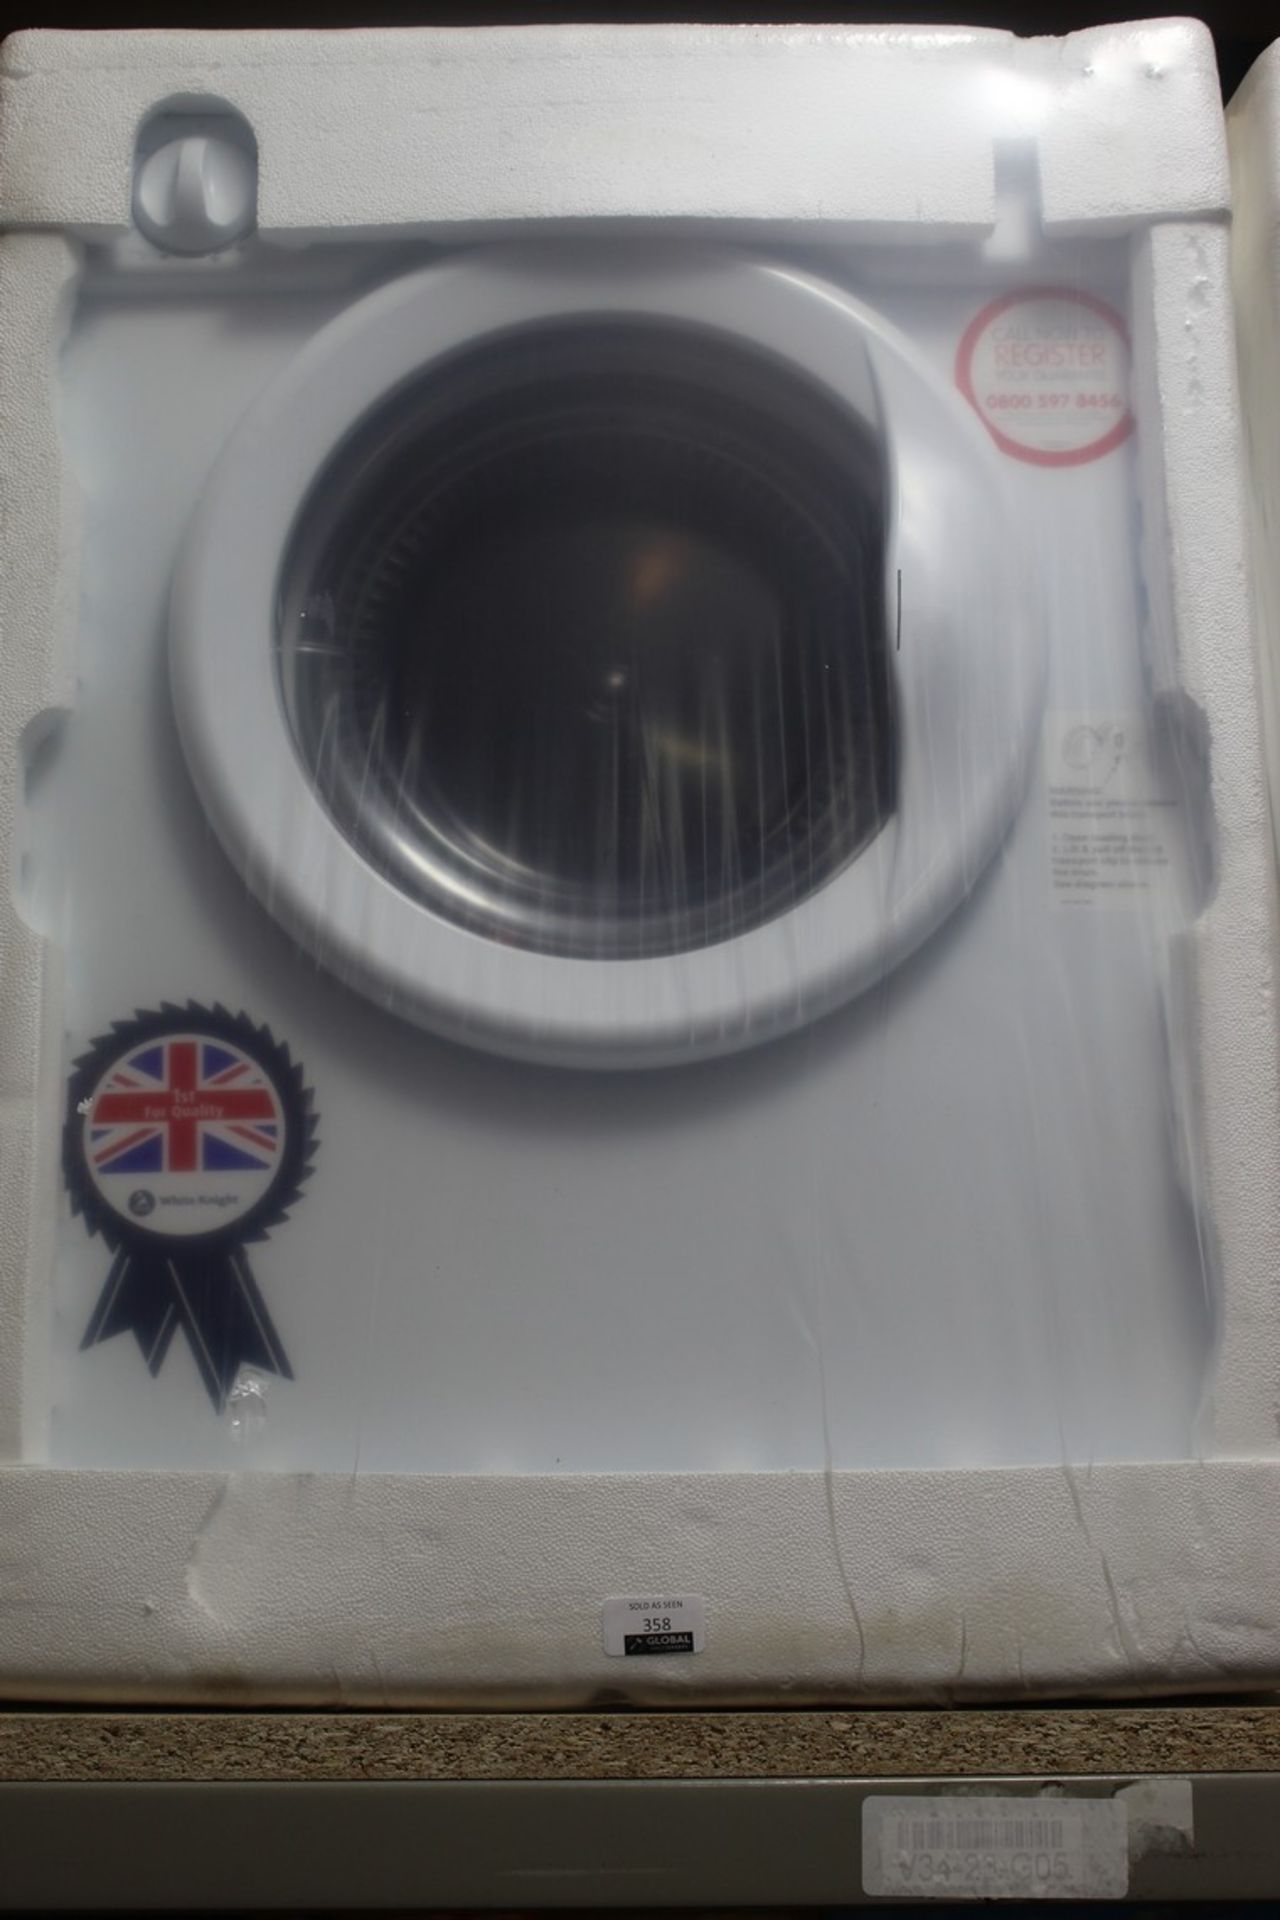 White Knight Dryer